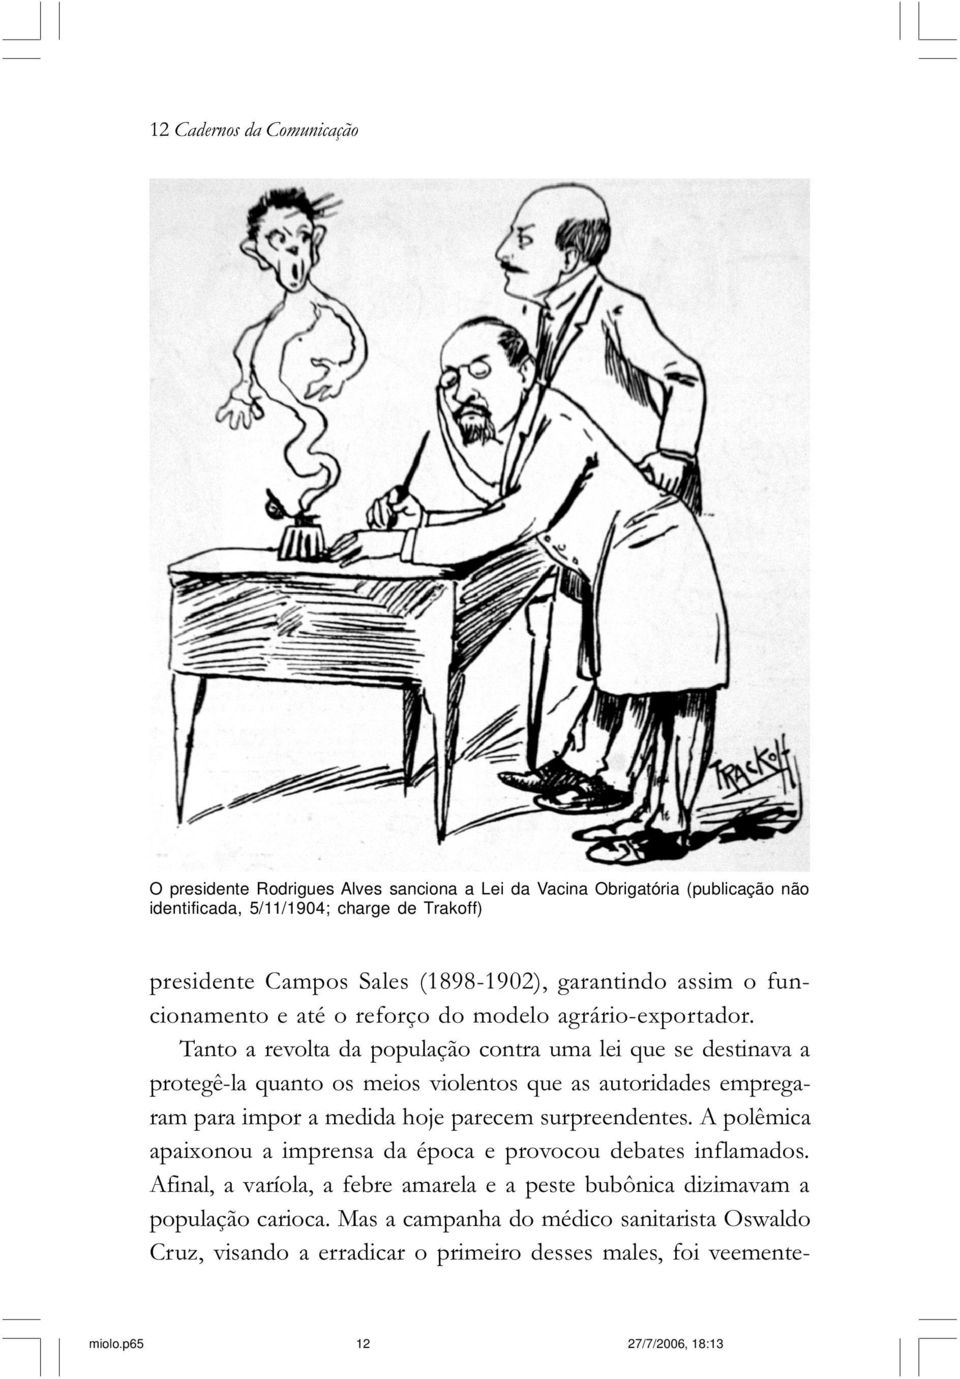 E mesmo intelectuais, como Rui Barbosa, engajaram-se contra a obrigatoriedade da vacinação.